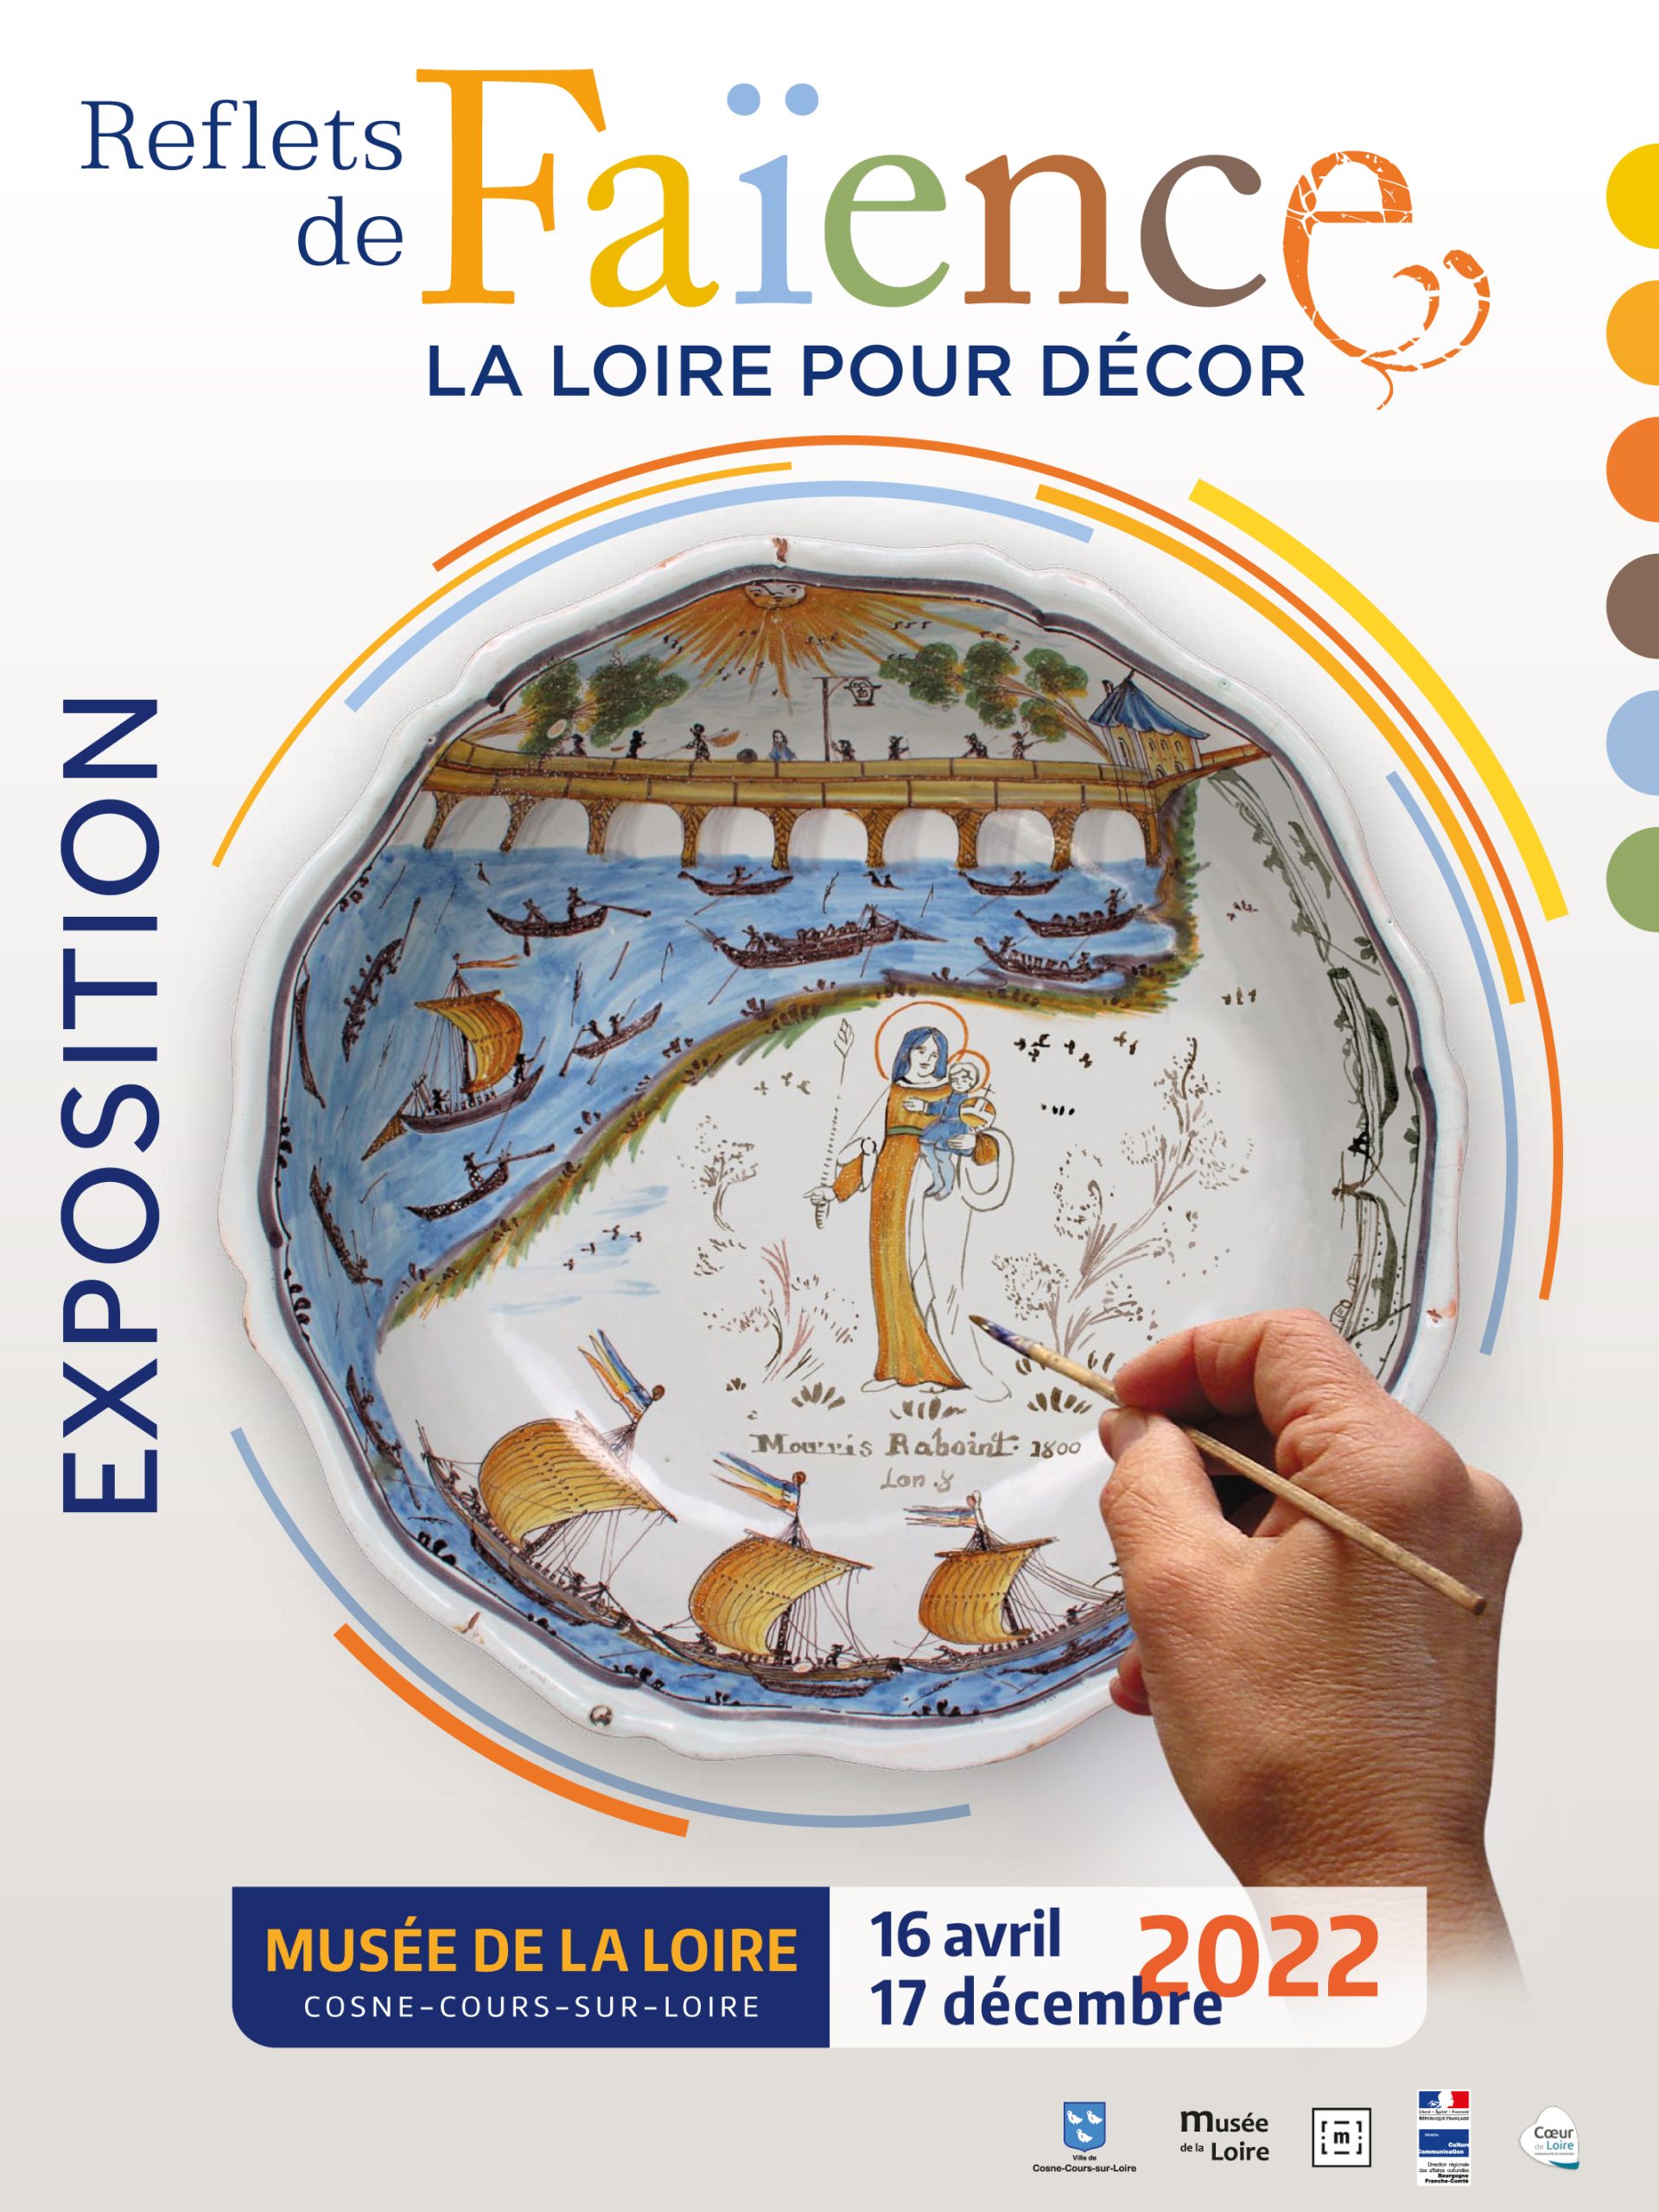 Exposition : Reflets de faïence, la Loire pour décor 2022 au Musée de la Loire